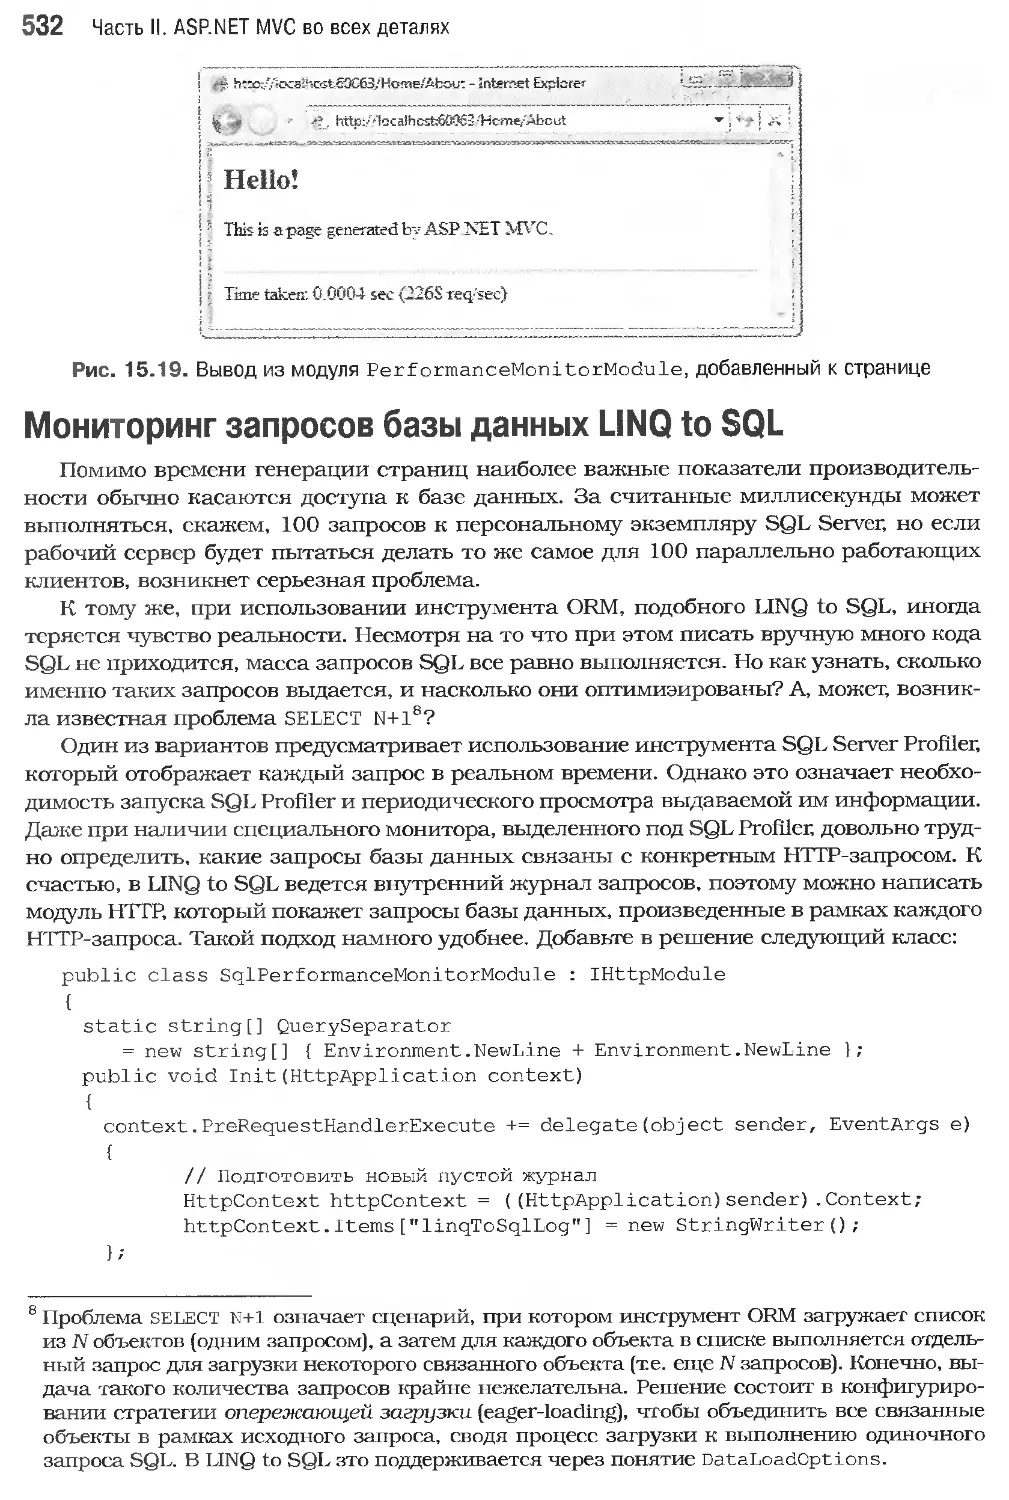 Мониторинг запросов базы данных LINQ to SQL